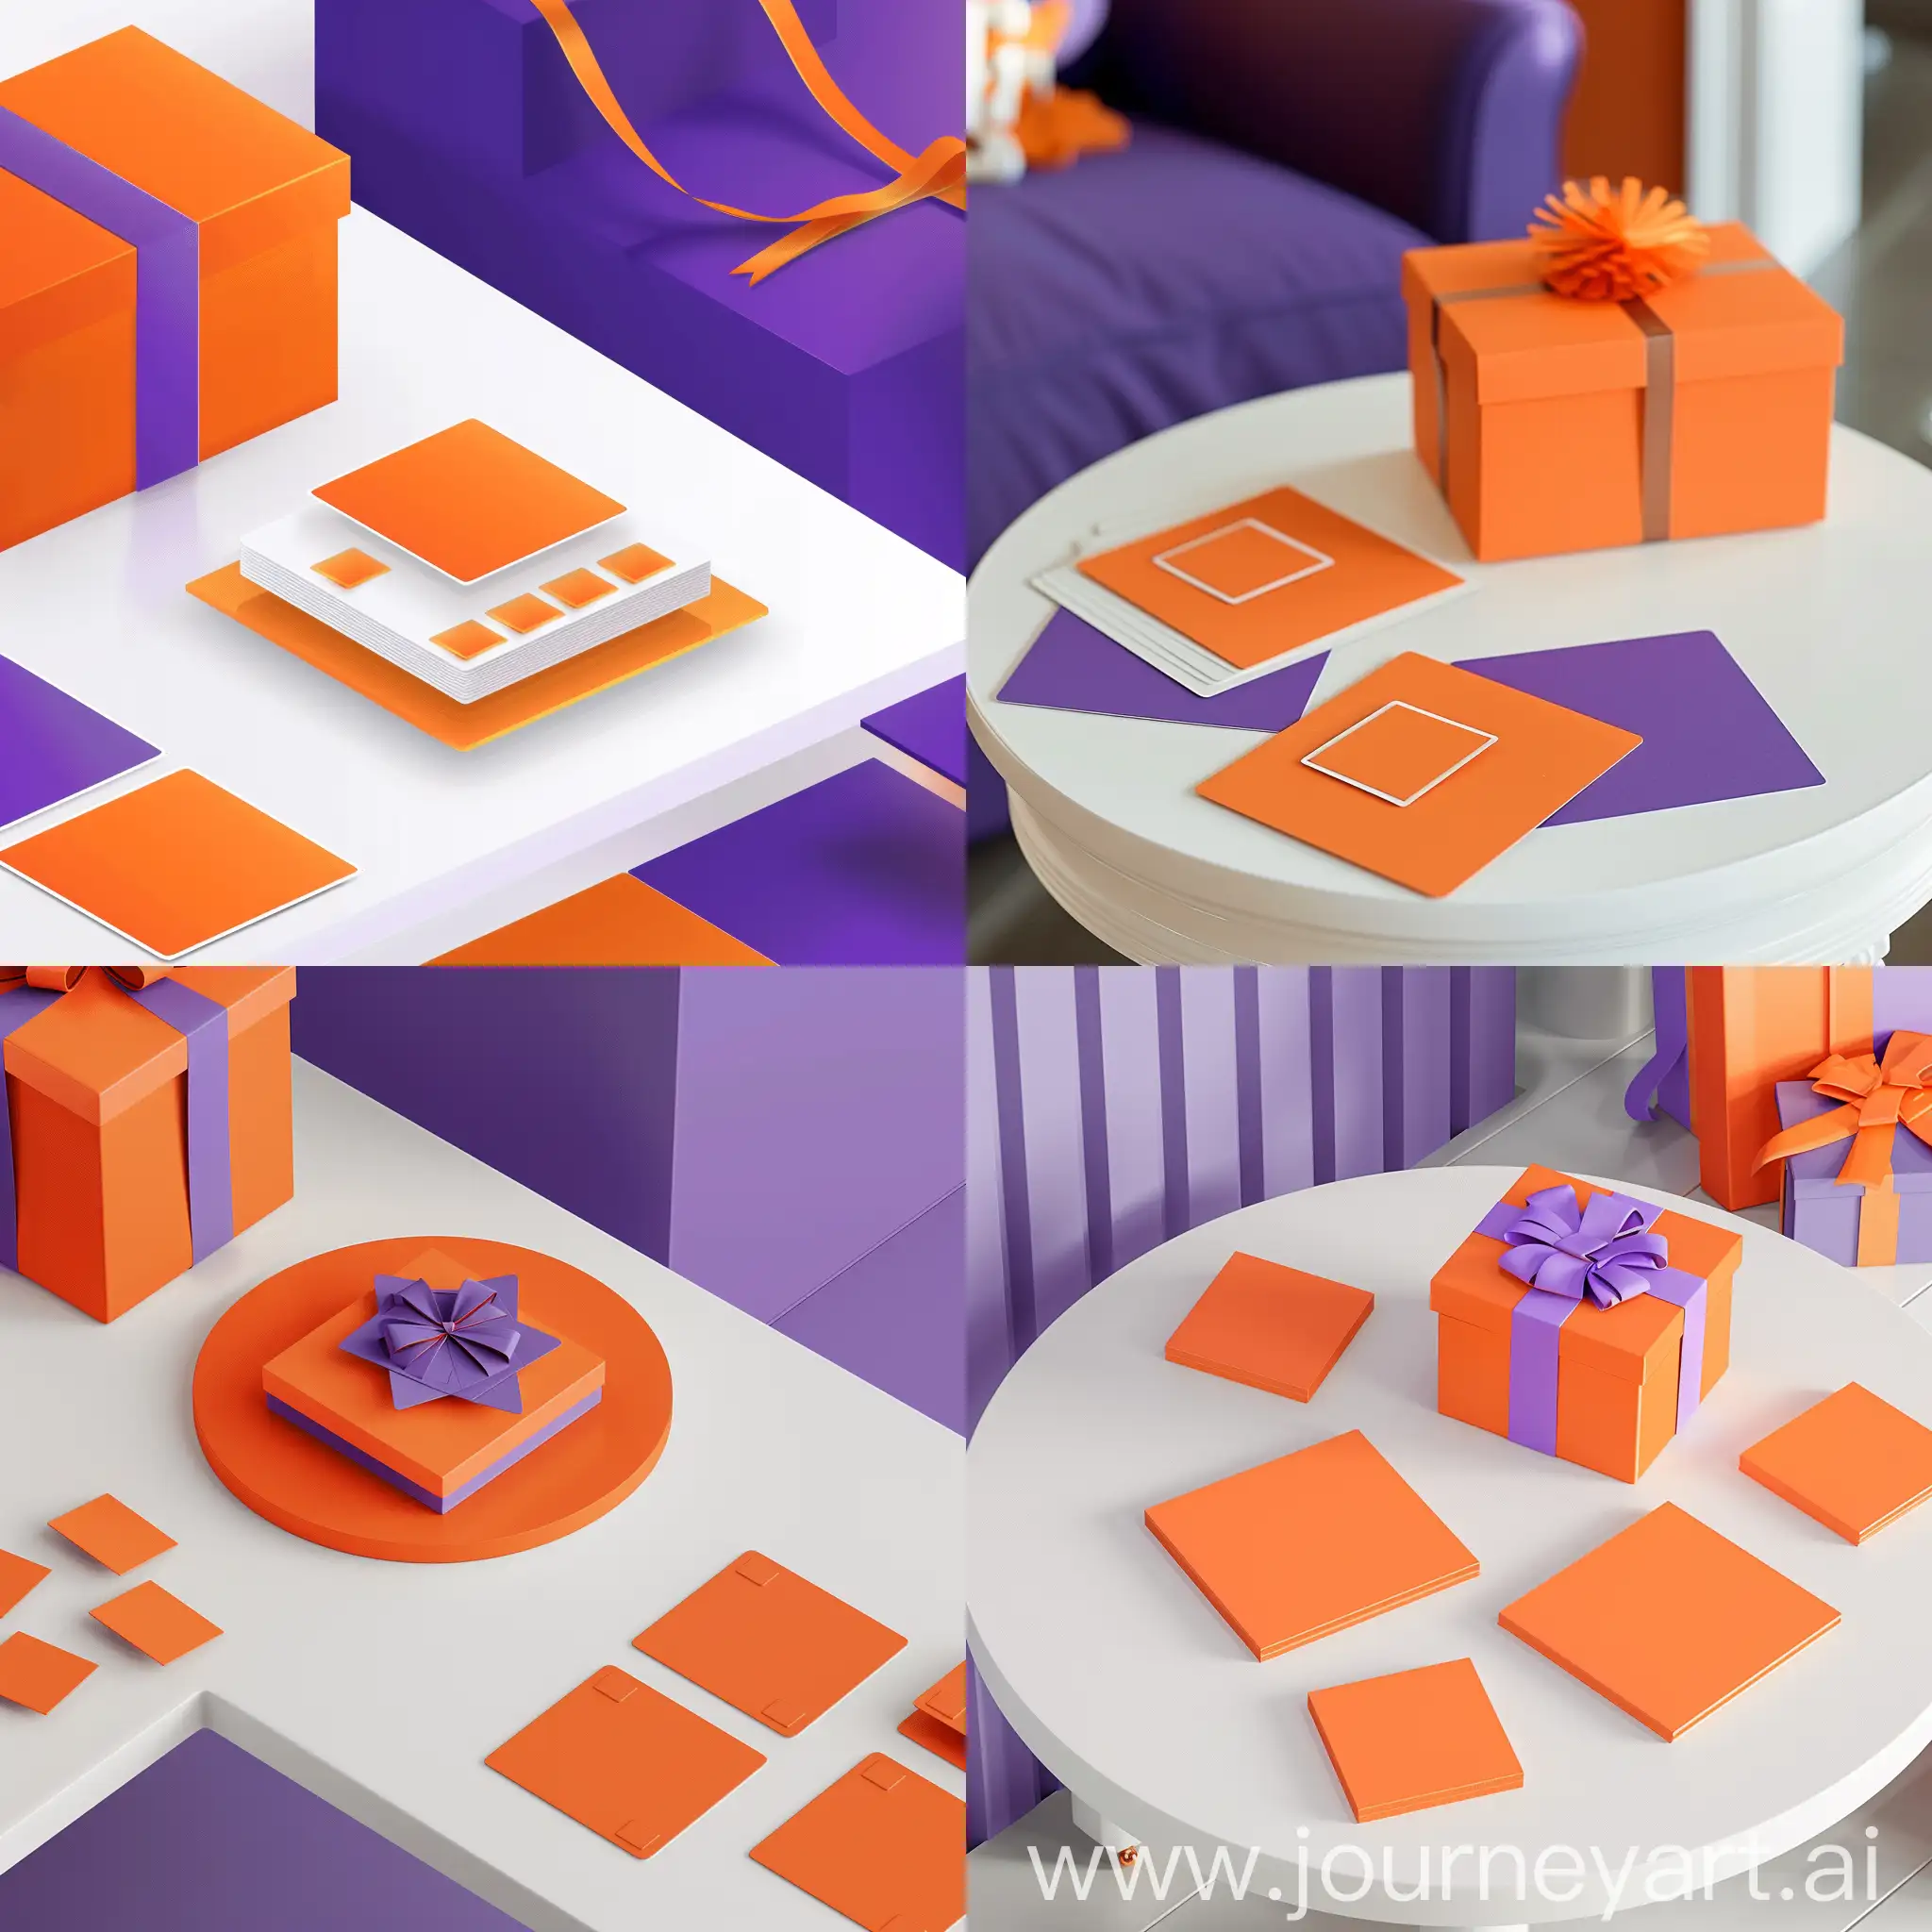 وکتور با تم رنگی نارنجی و بنفش با این مشخصات : یک جدول سفید که روی تعدادی کارت مربعی نارنجی و یک جعبه هدیه نارنجی است